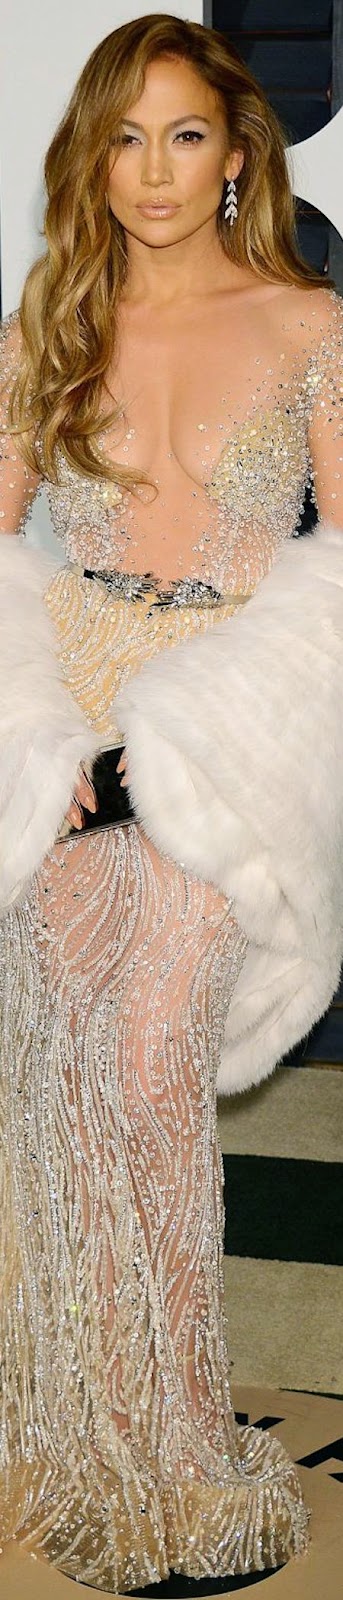  2015 Vanity Fair Oscar Party Jennifer Lopez